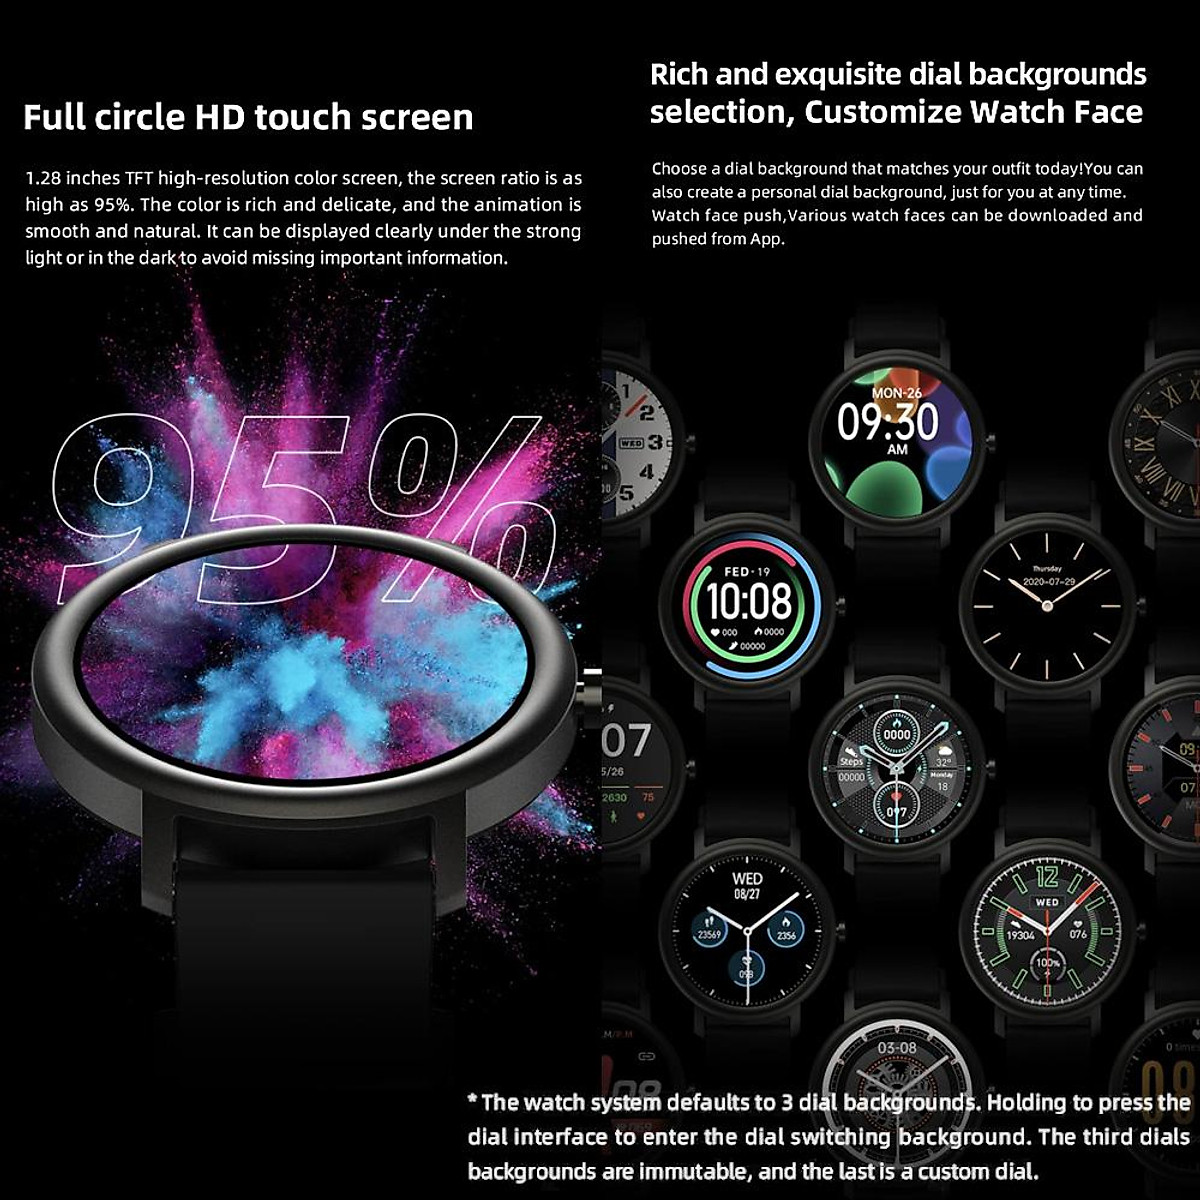 Mibro Air Smart Watch là một phiên bản toàn cầu của chiếc đồng hồ thông minh rất đáng xem. Với tính năng fitness tracker, đồng hồ sẽ giúp bạn theo dõi tình trạng sức khỏe của mình một cách chính xác và dễ dàng. Hãy xem hình ảnh để khám phá thêm về các tính năng tuyệt vời của Mibro Air Smart Watch.